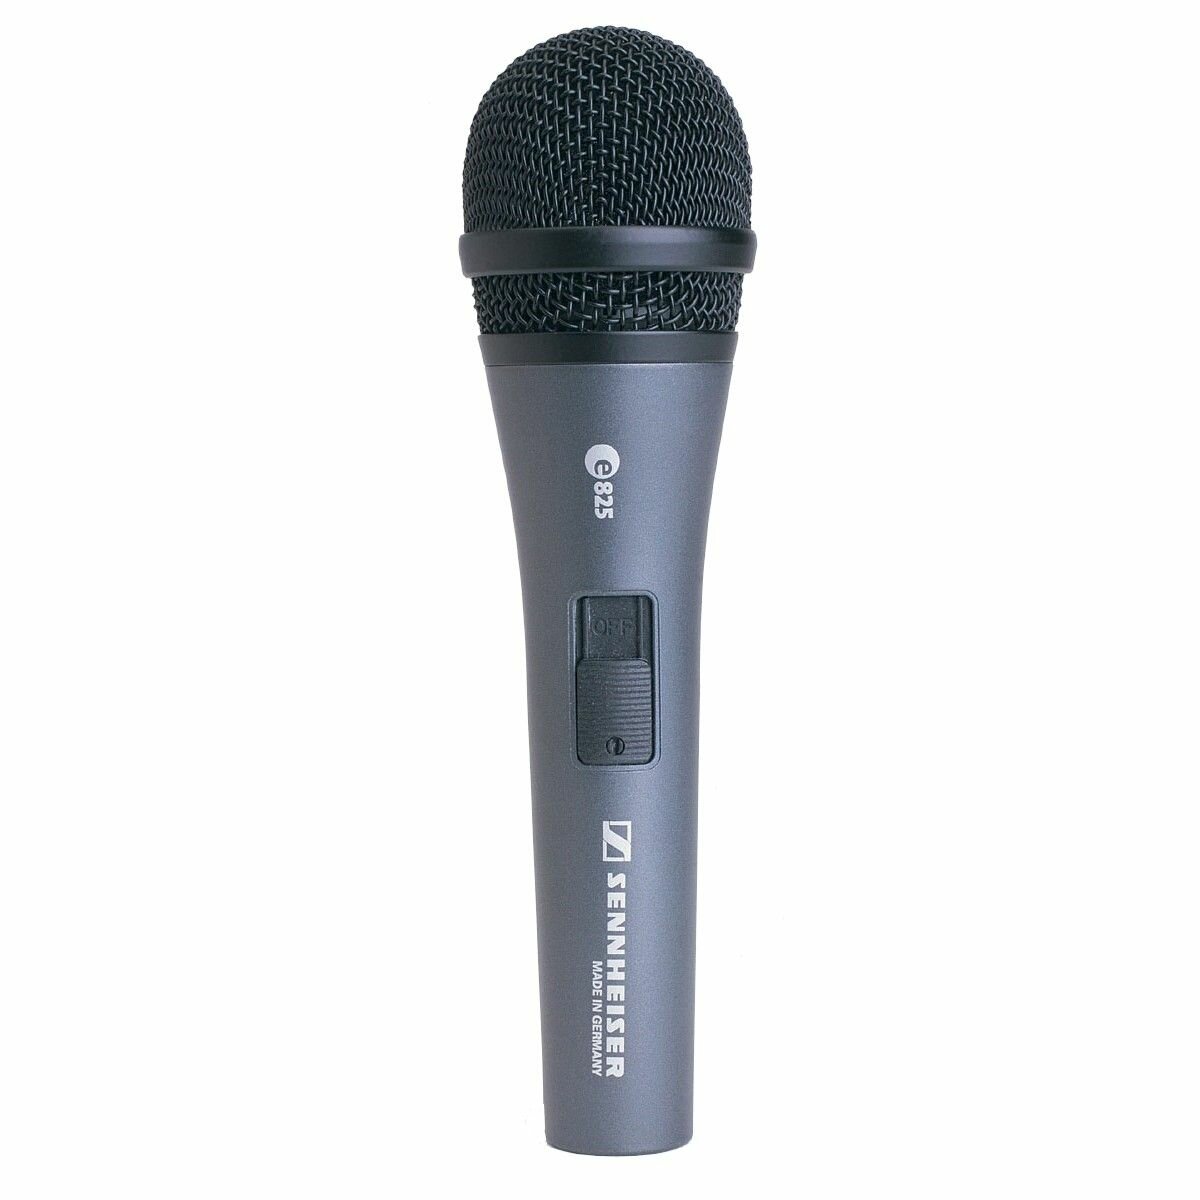 Sennheiser E 825-S - Динамический вокальный микрофон с выключателем кардиоида